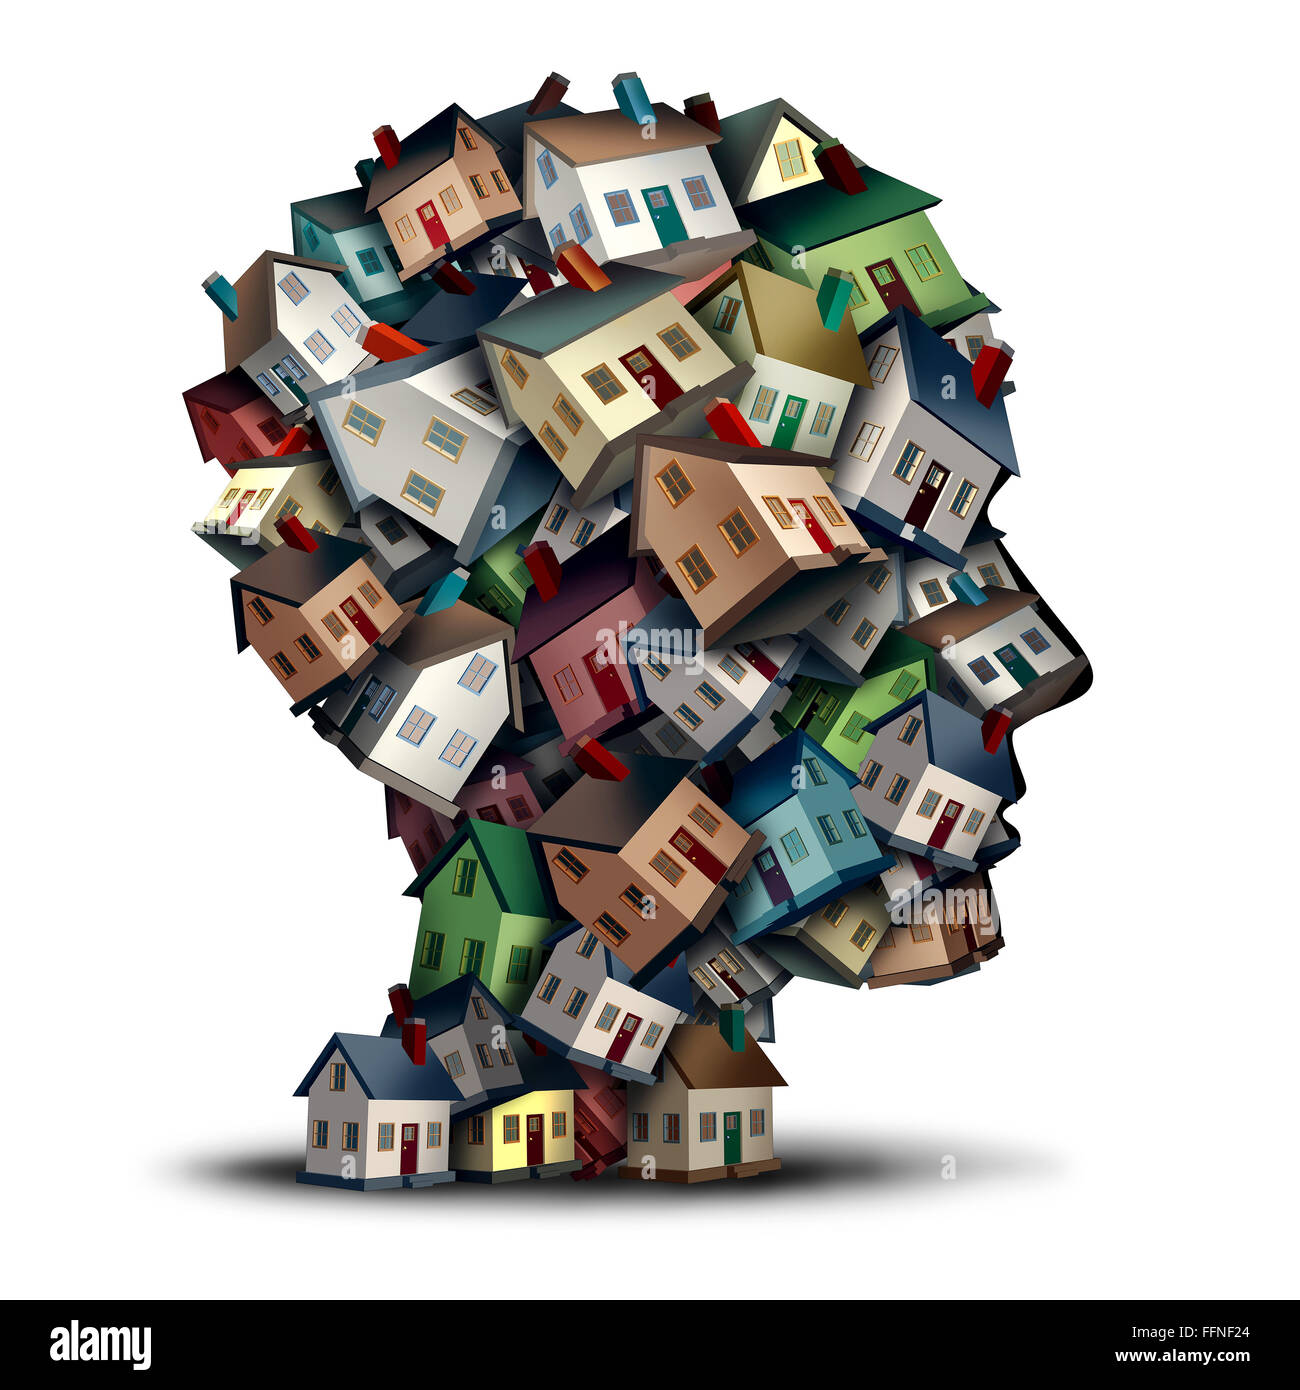 Agente immobiliare simbolo e pensando di home tassi ipotecari nozione come un gruppo di case o di case a forma di una testa umana agente immobiliare di una casa o di prestito immobiliare industria broker. Foto Stock